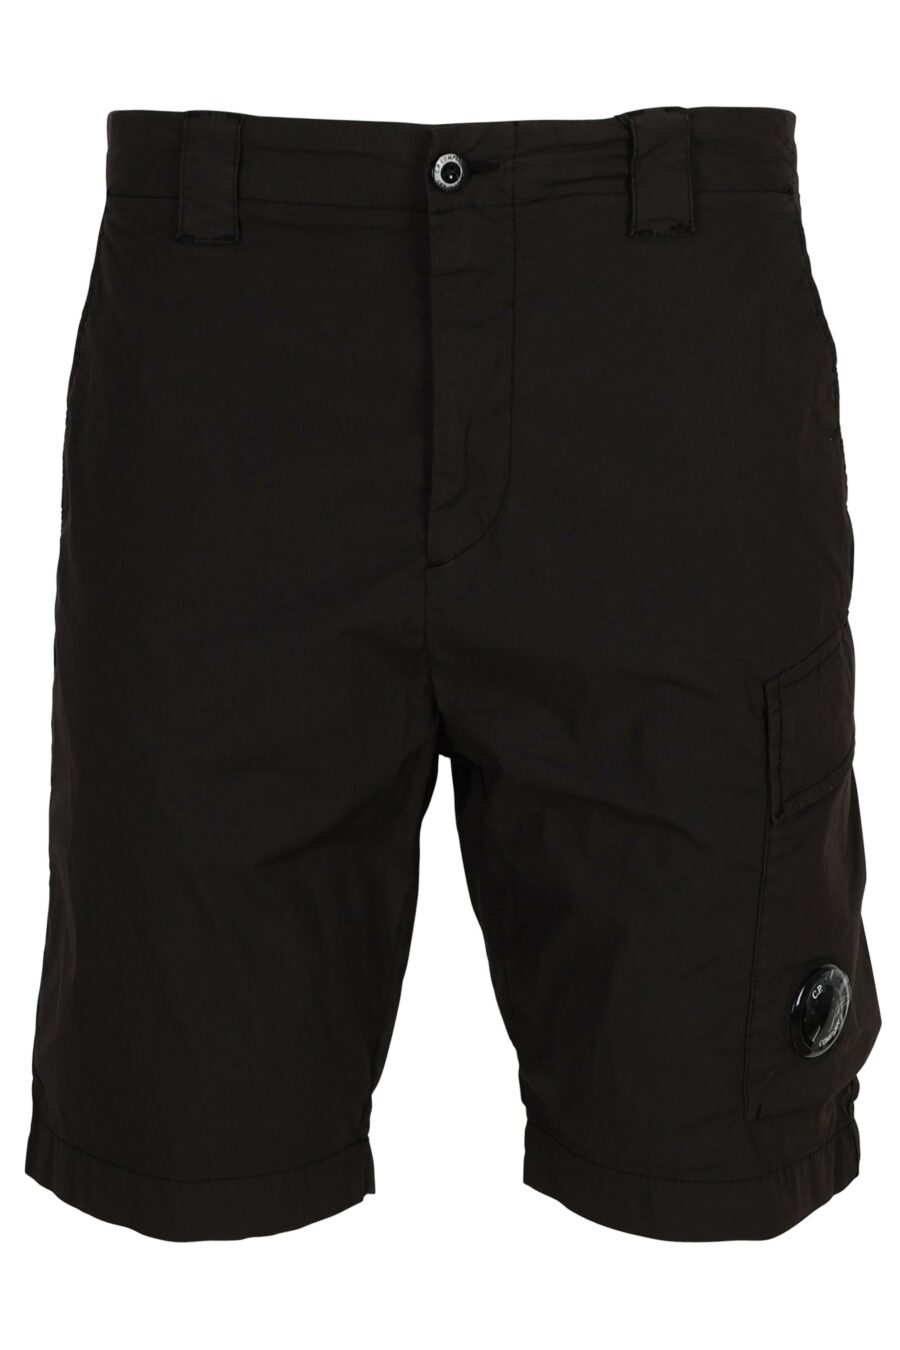 Pantalón corto midi negro oscuro con minilogo lente - 7620943786699